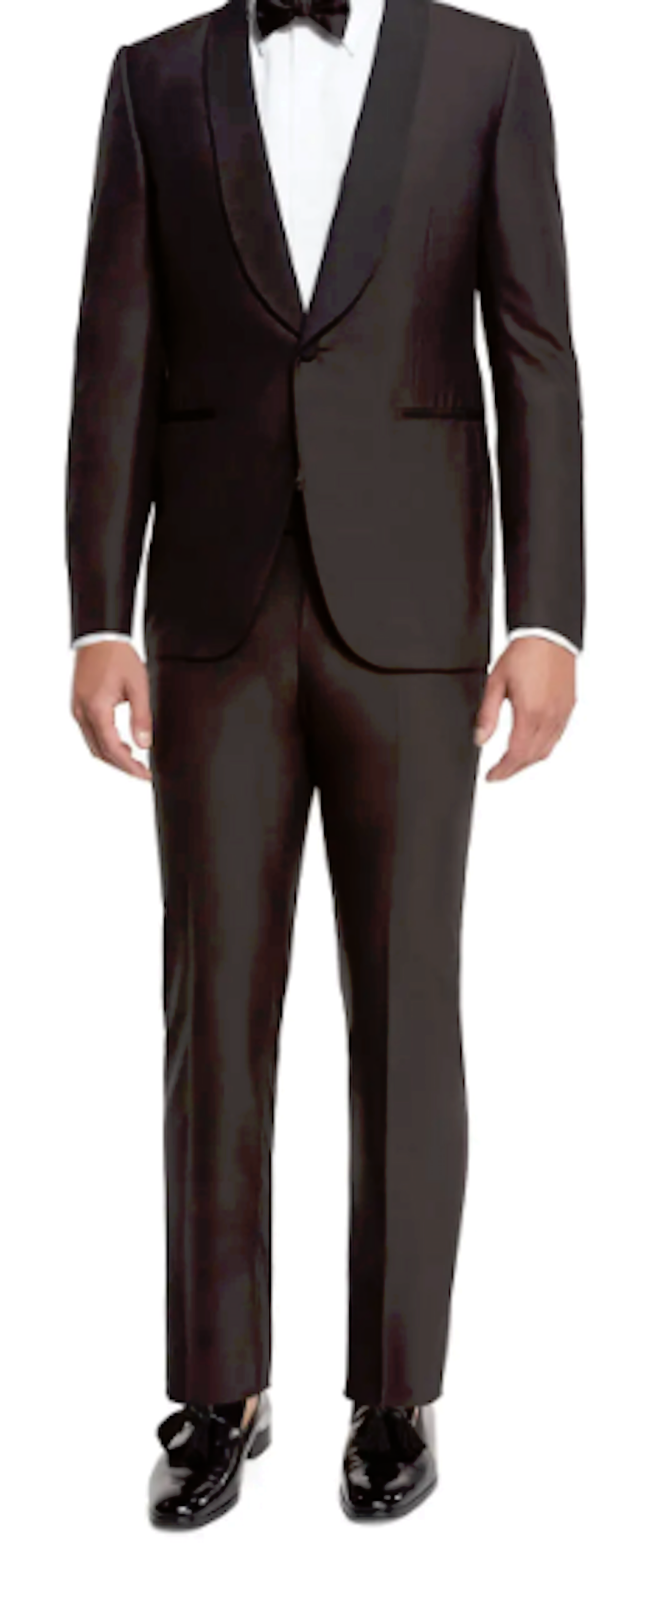 Ermenegildo Zenga tuxedo Beautiful, Classy!  Size 41 jacket, 37x30 pants